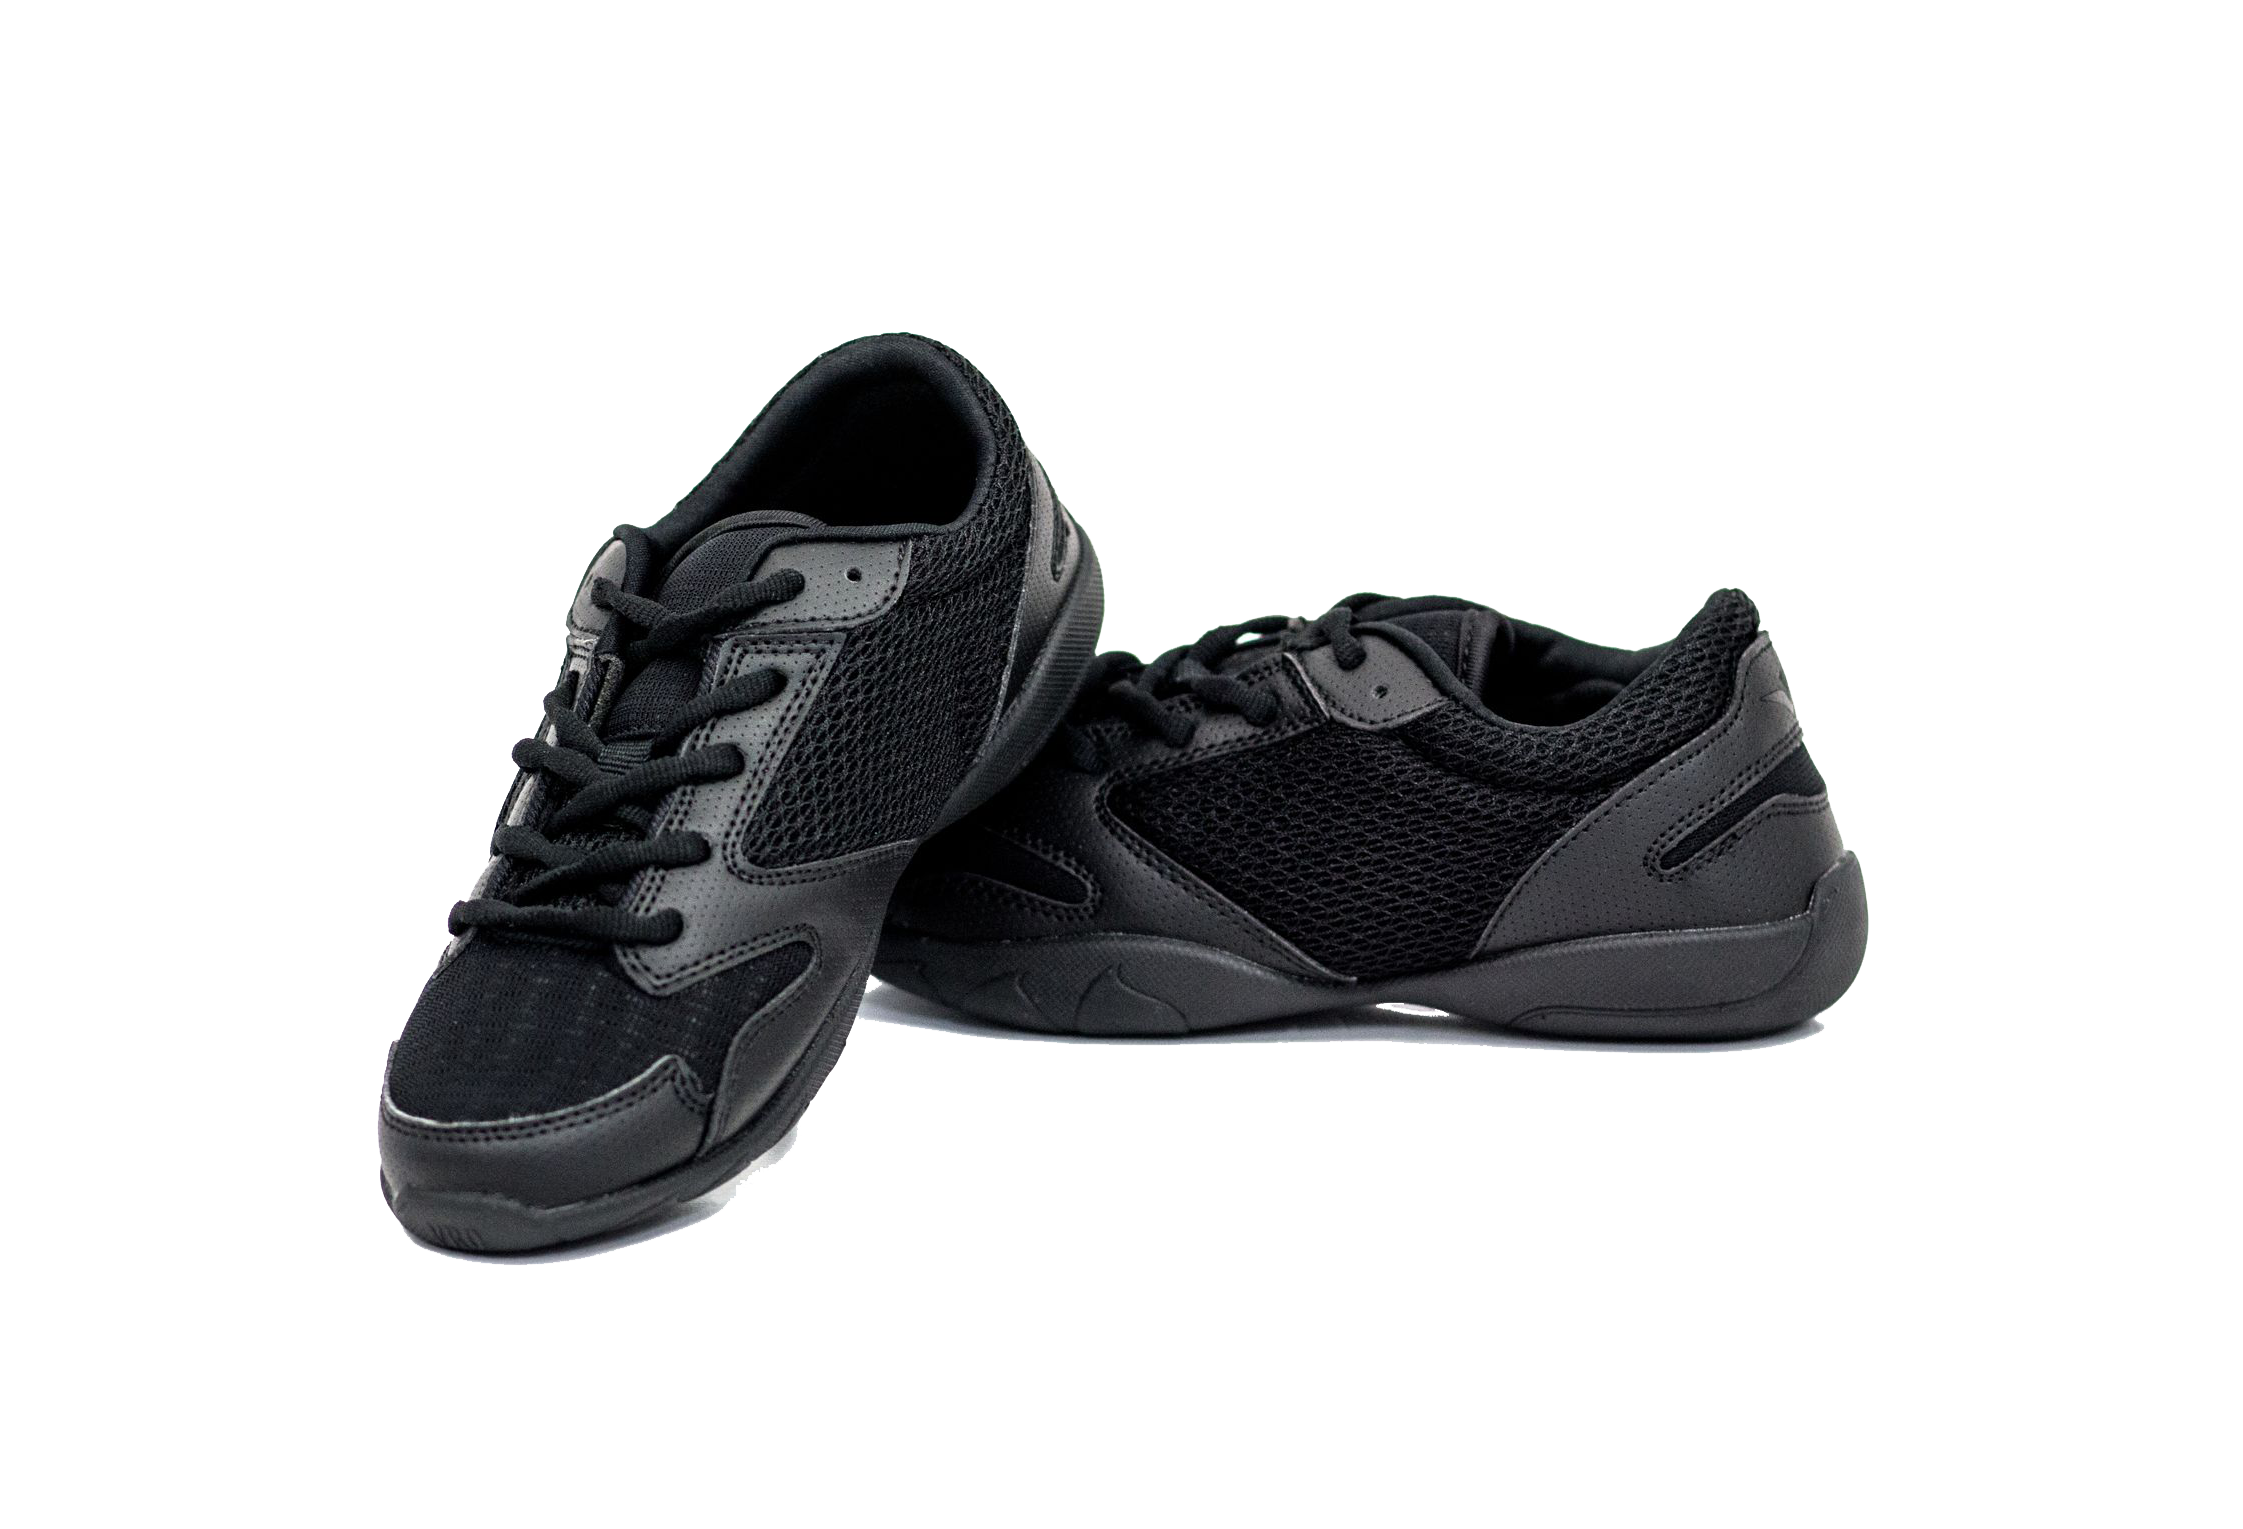 VRO Black Mesh Cheer Shoes – 1A Aerobic Shoes